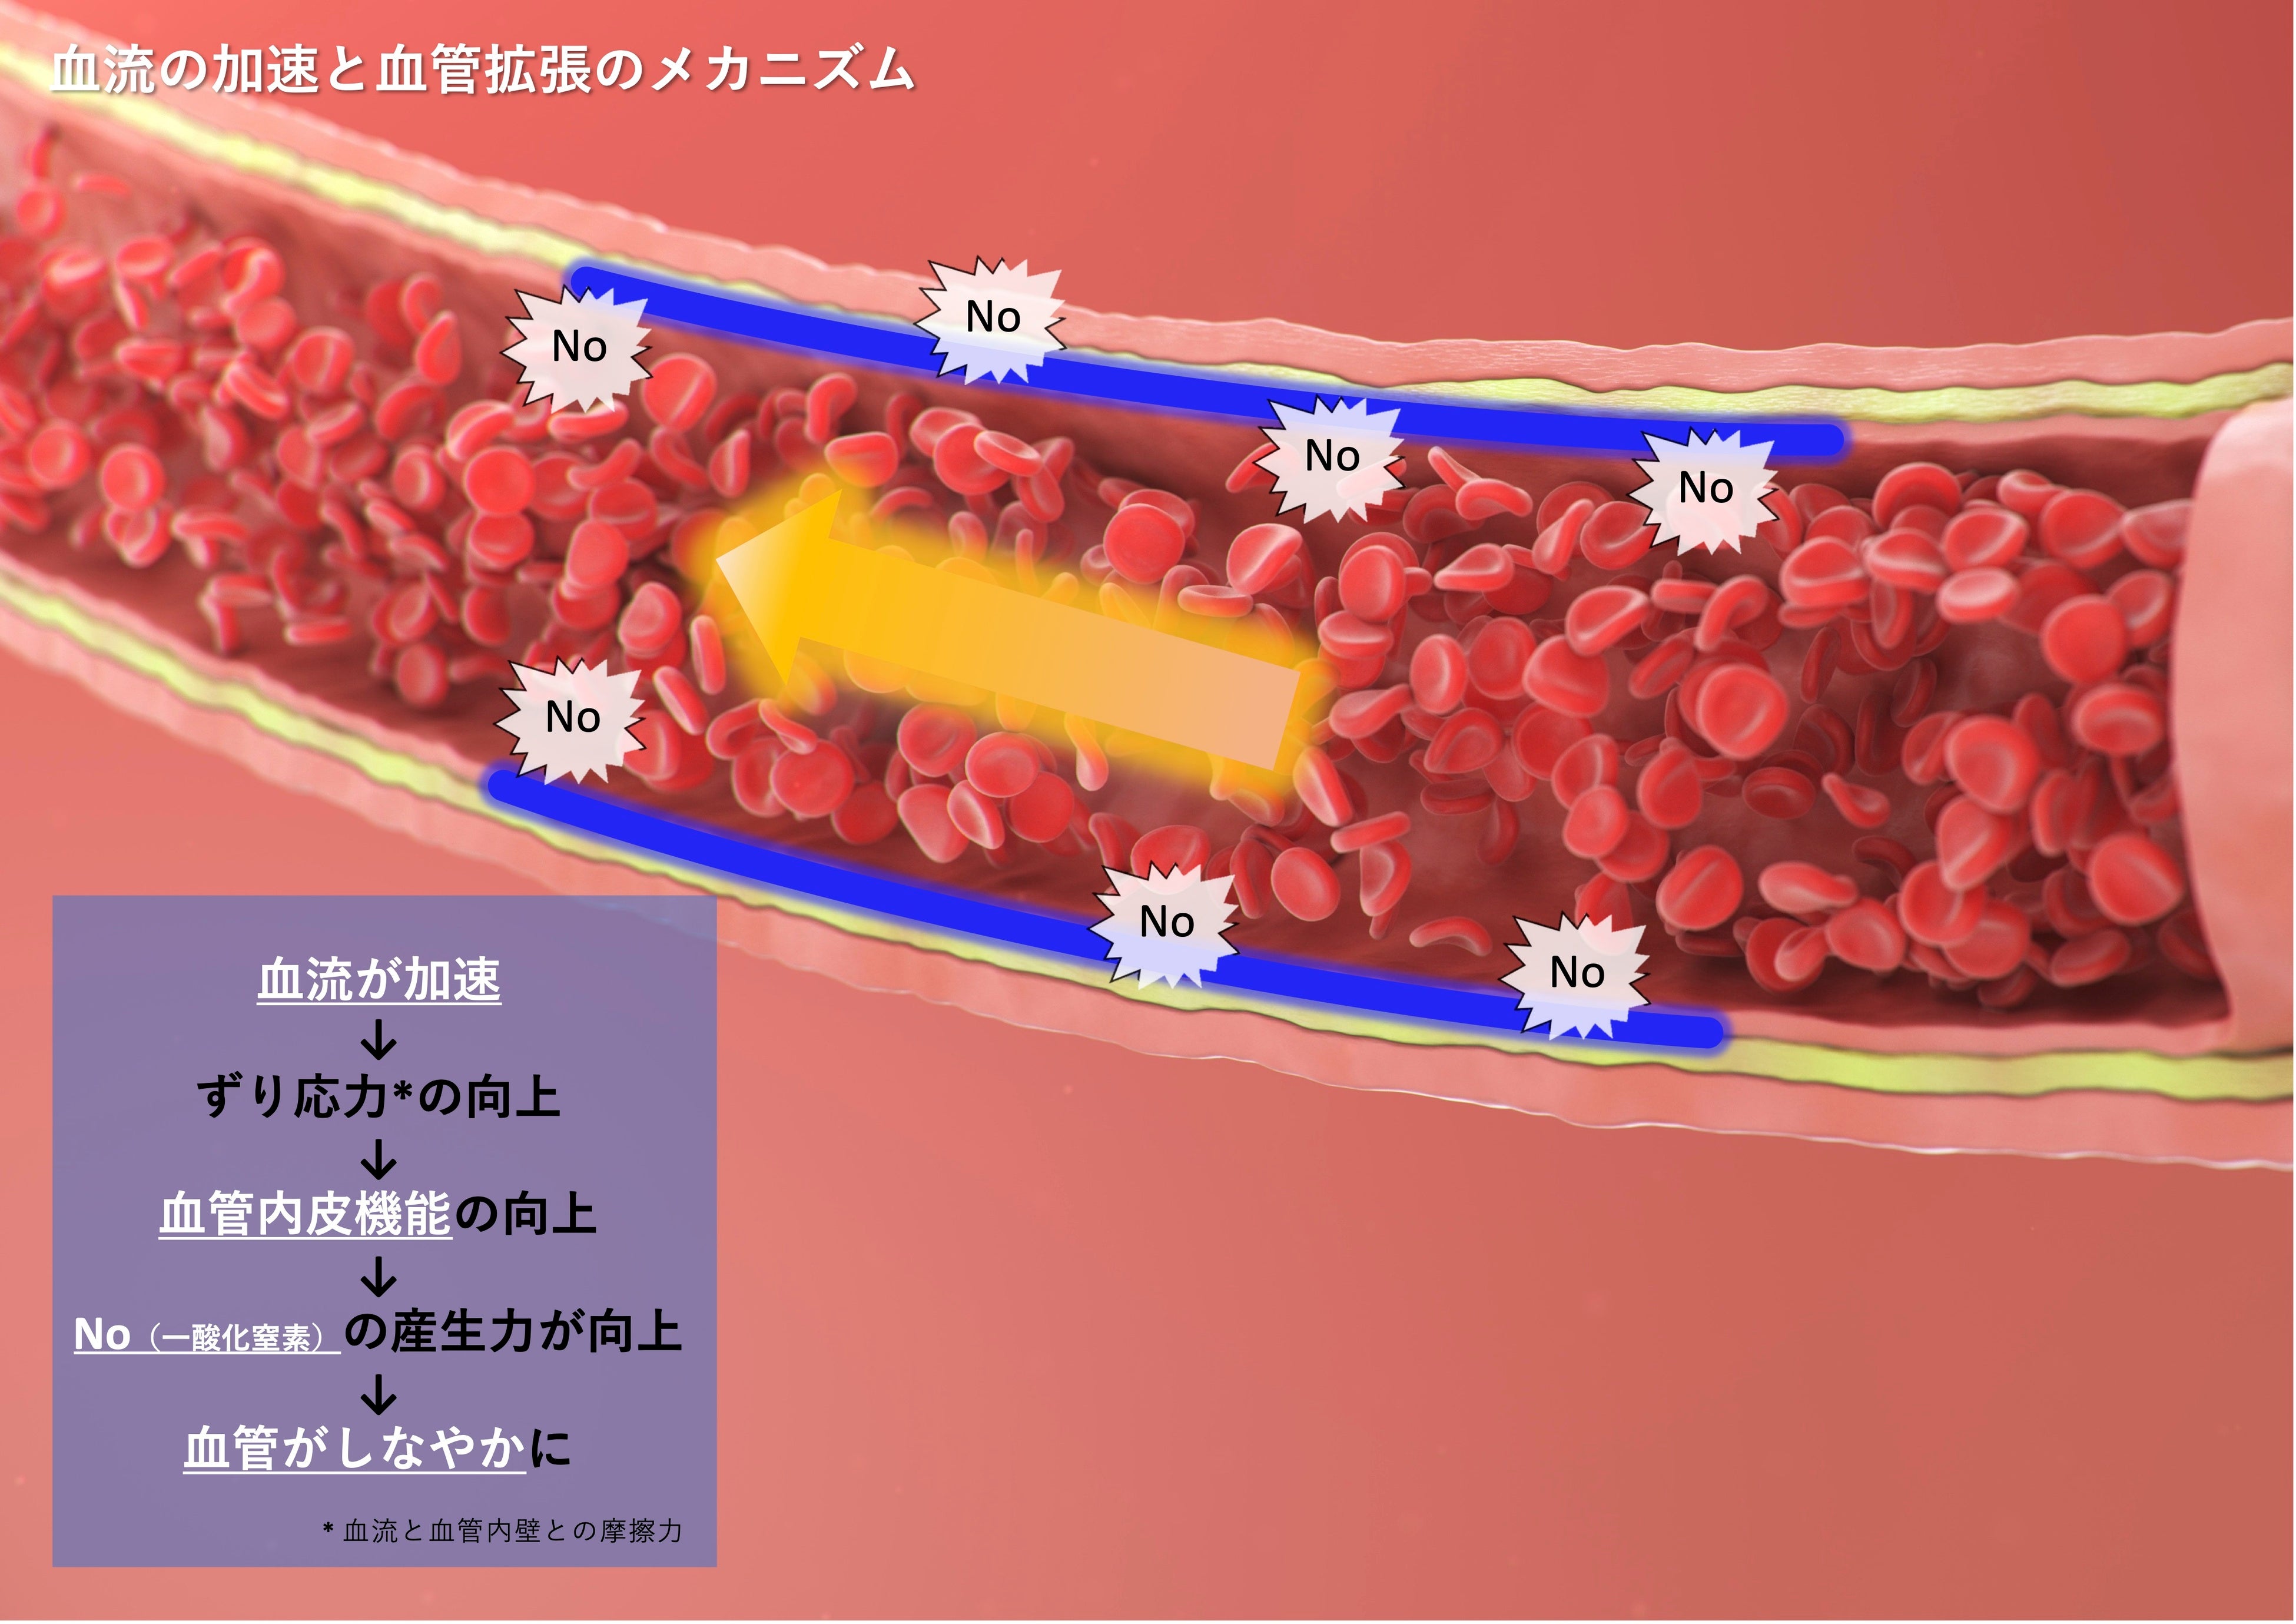 血管拡張のメカニズム。良い血流が血管をしなやかにする